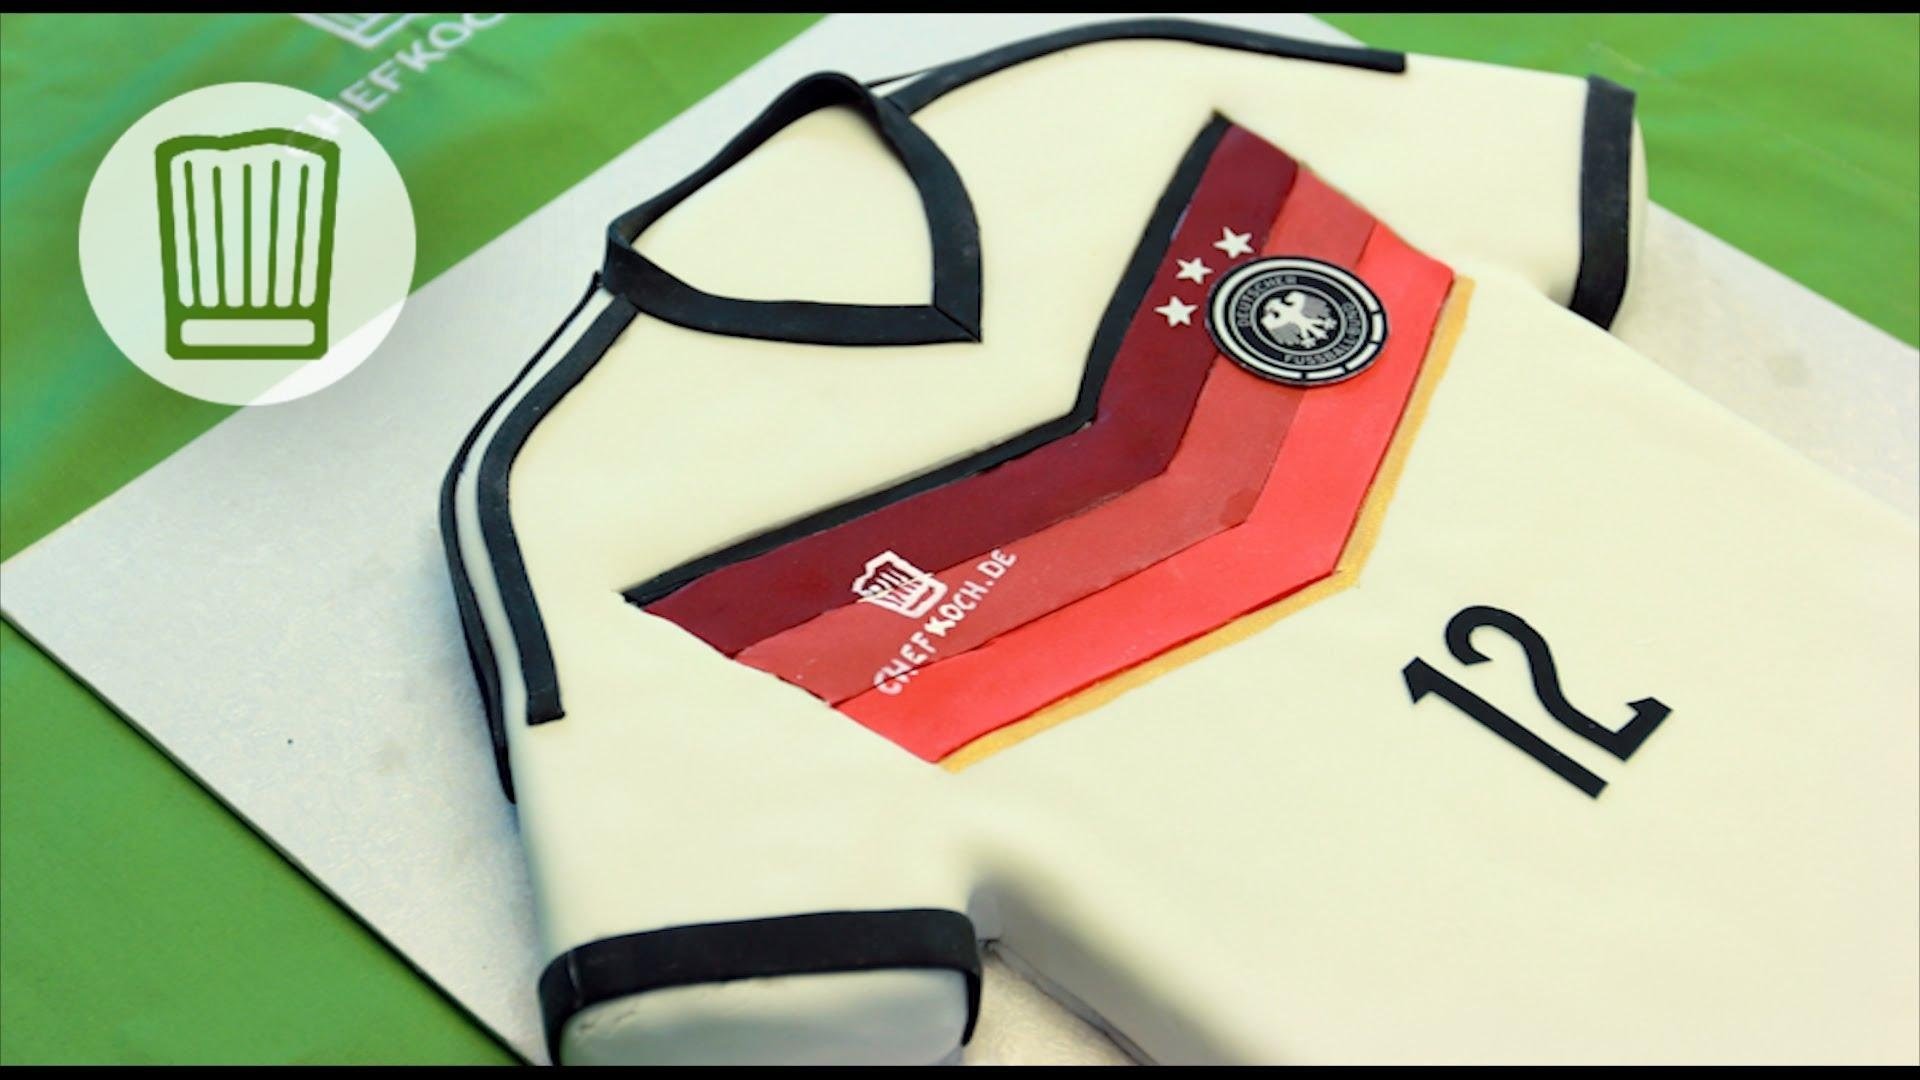 WM-Kuchen: eine Trikot-Torte zu WM 2014 - vier Sterne für unsere Elf #chefkoch